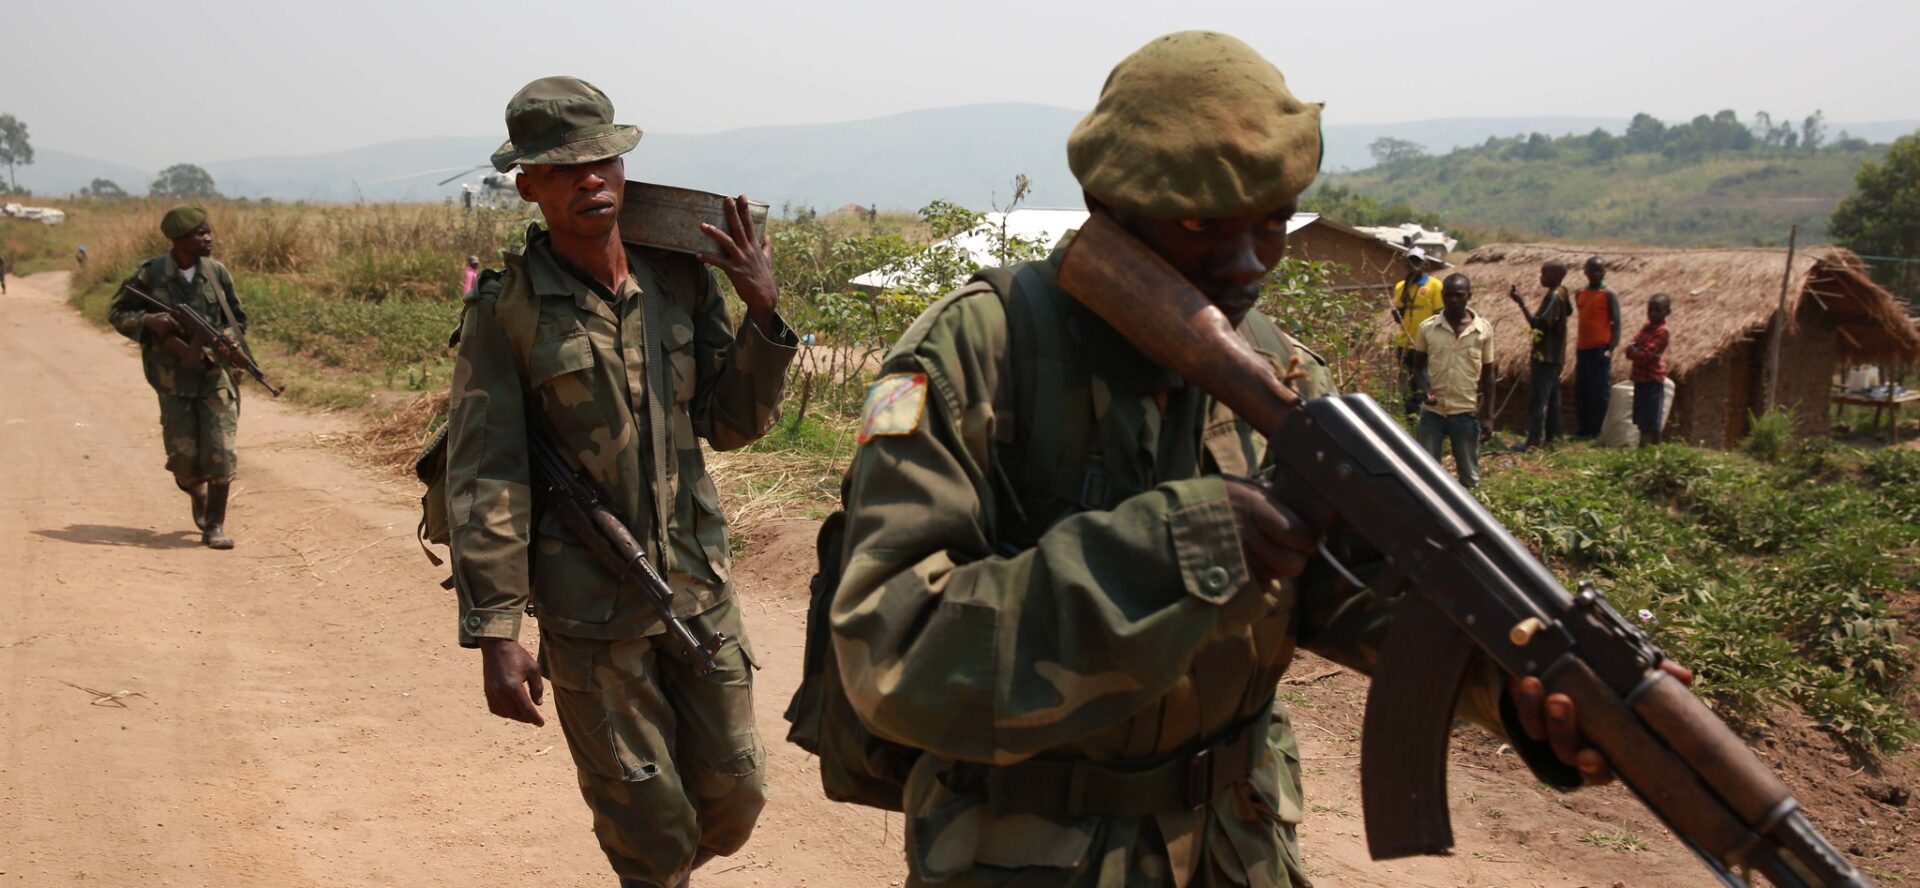 La situation sécuritaire est très tendue dans le Nord-Kivu (RDC Congo) | photo d'illustration © MONUSCO Photos/Flickr/CC BY-SA 2.0